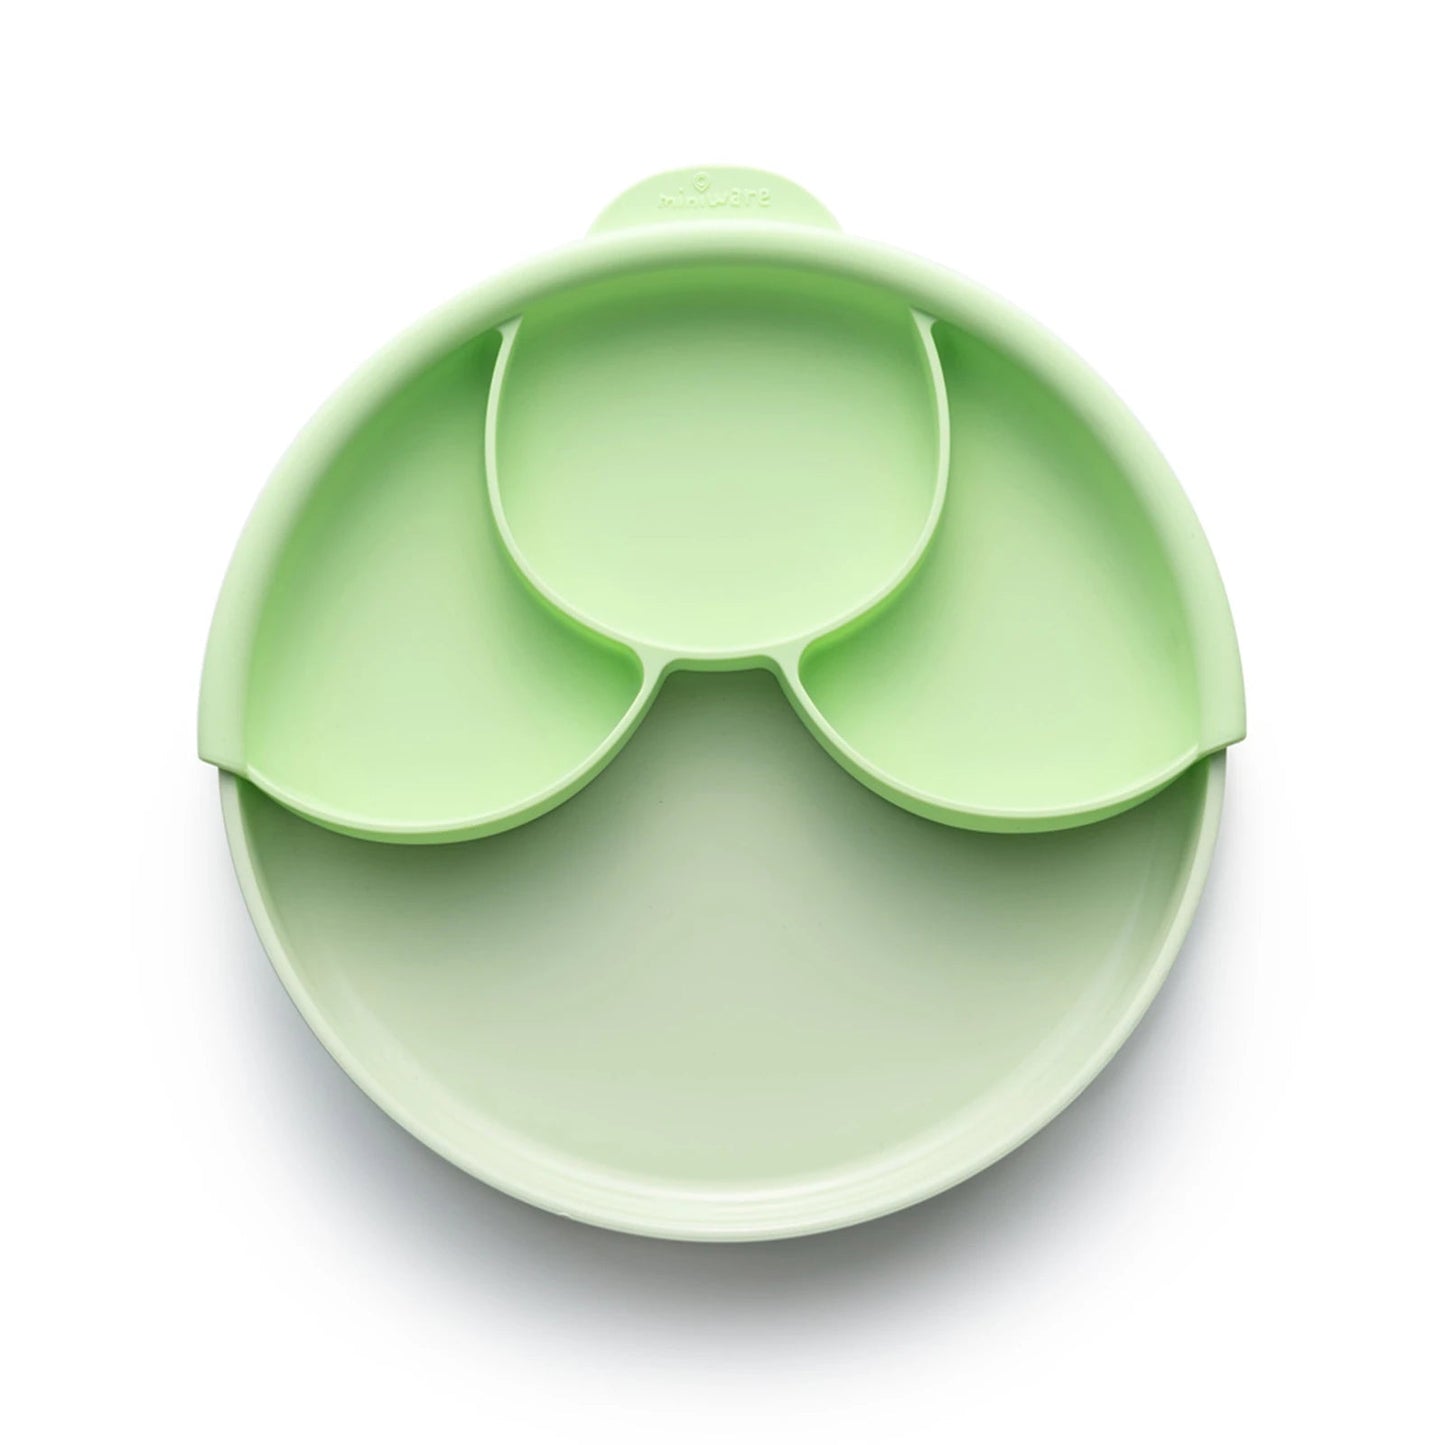 Healthy Meal Set - Divider Plate (Keylime/Keylime)